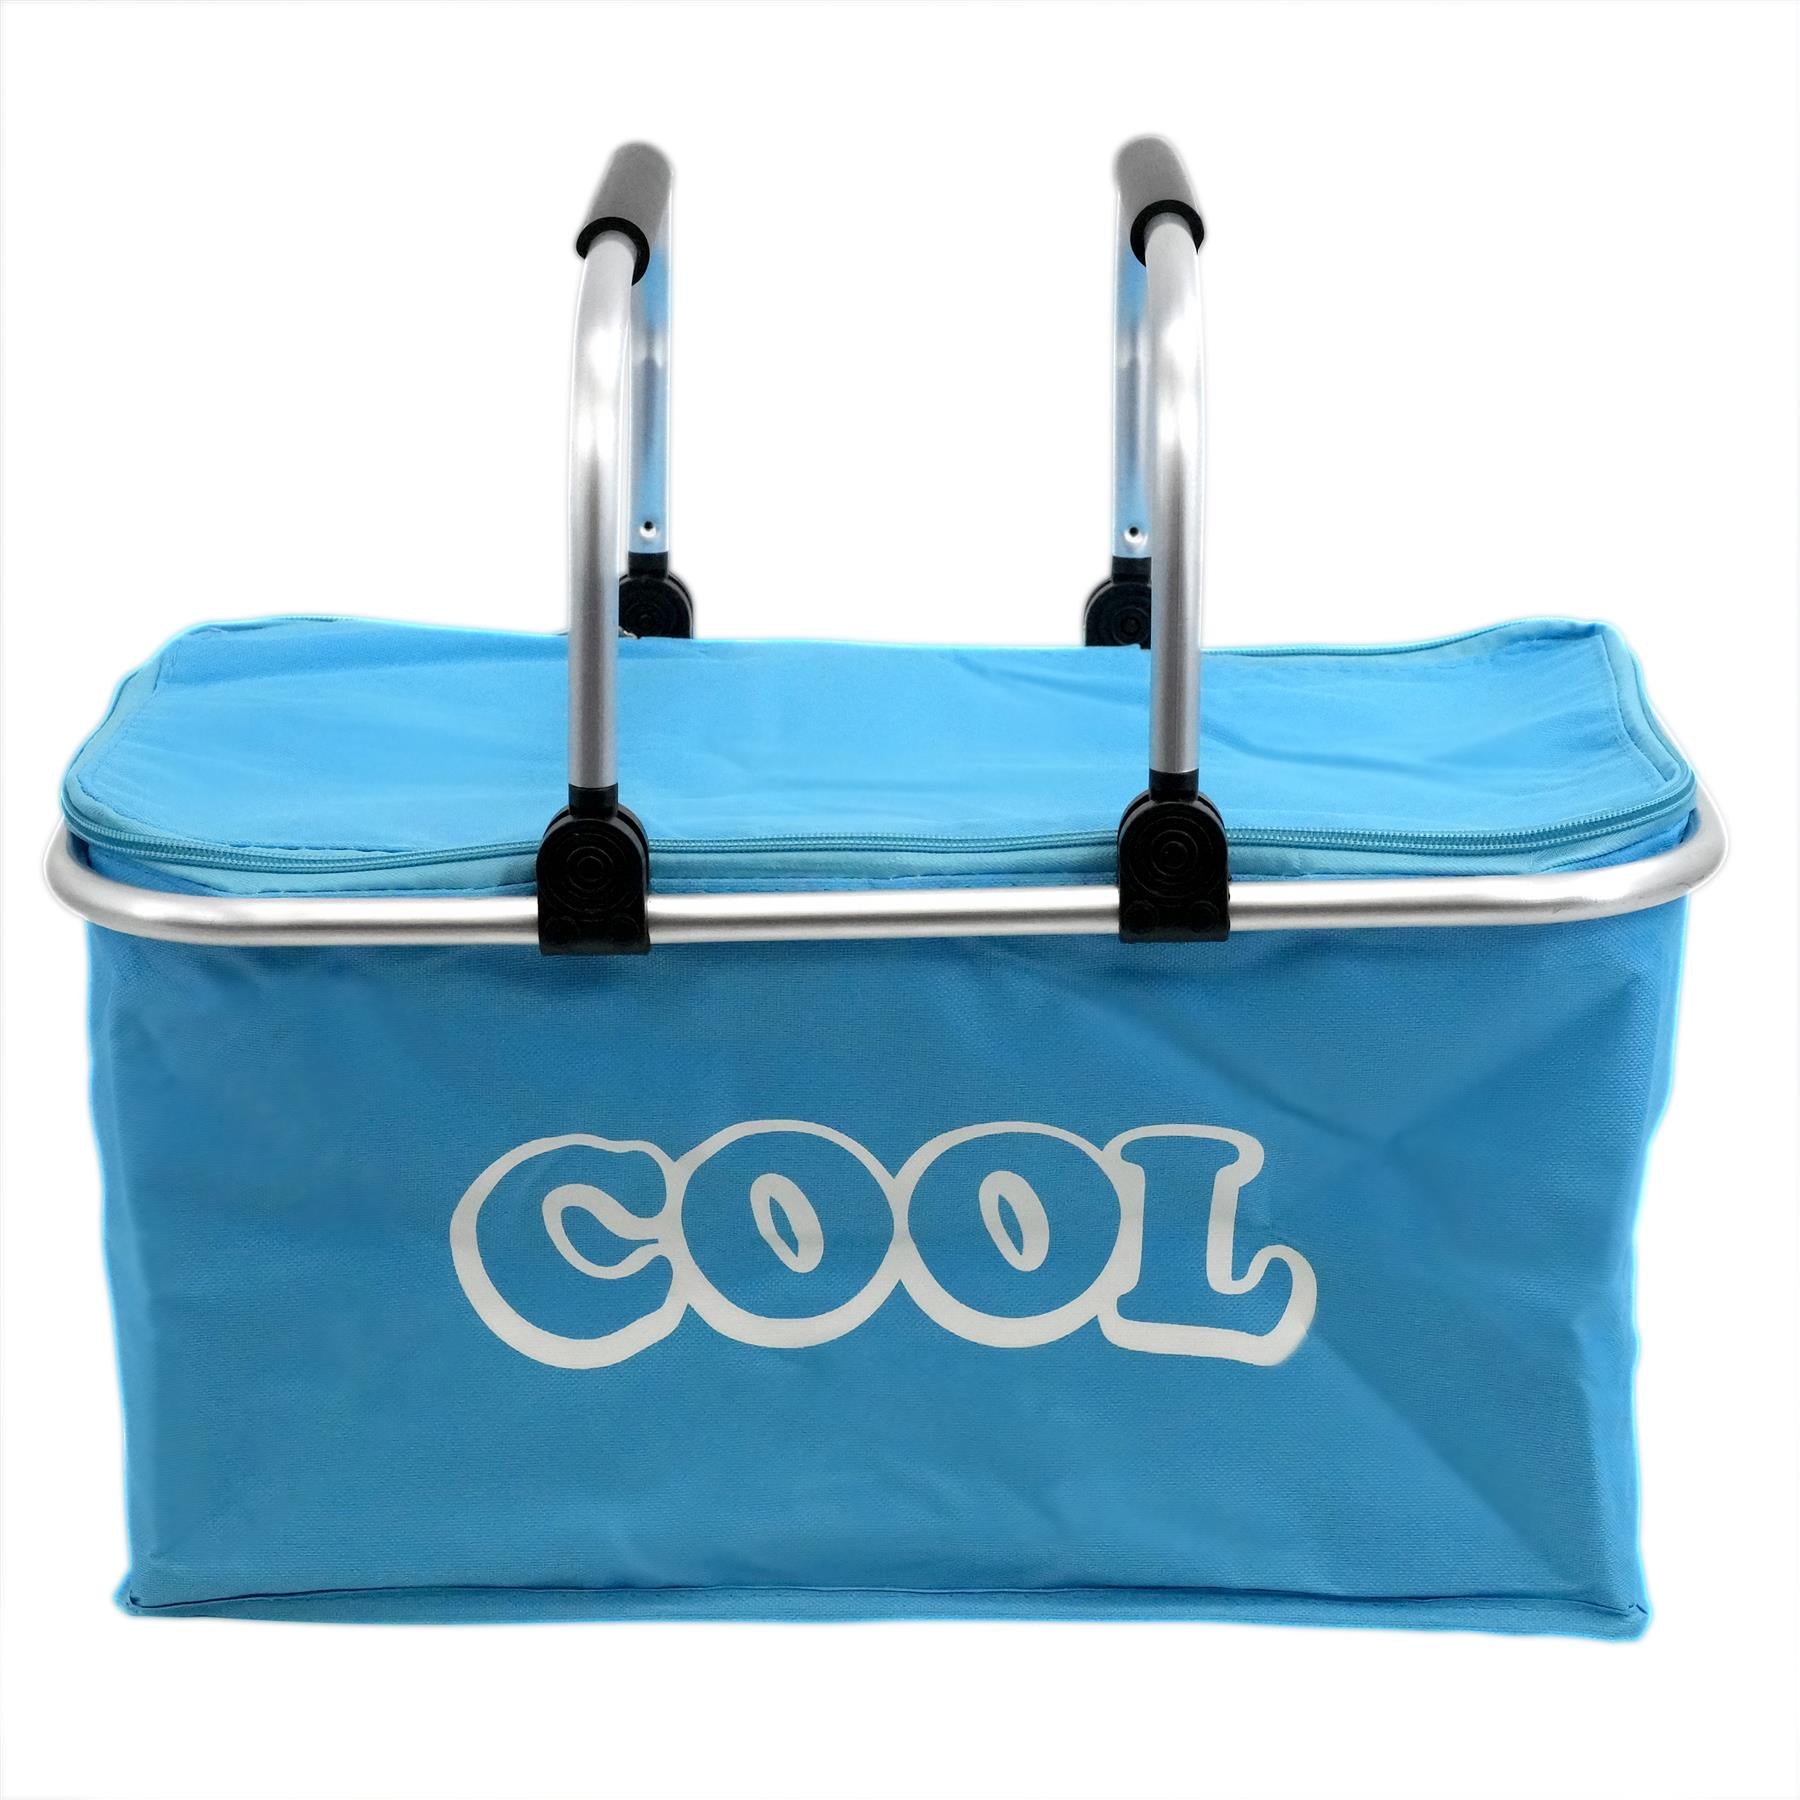 Blue Cooler Basket Bag GEEZY - The Magic Toy Shop